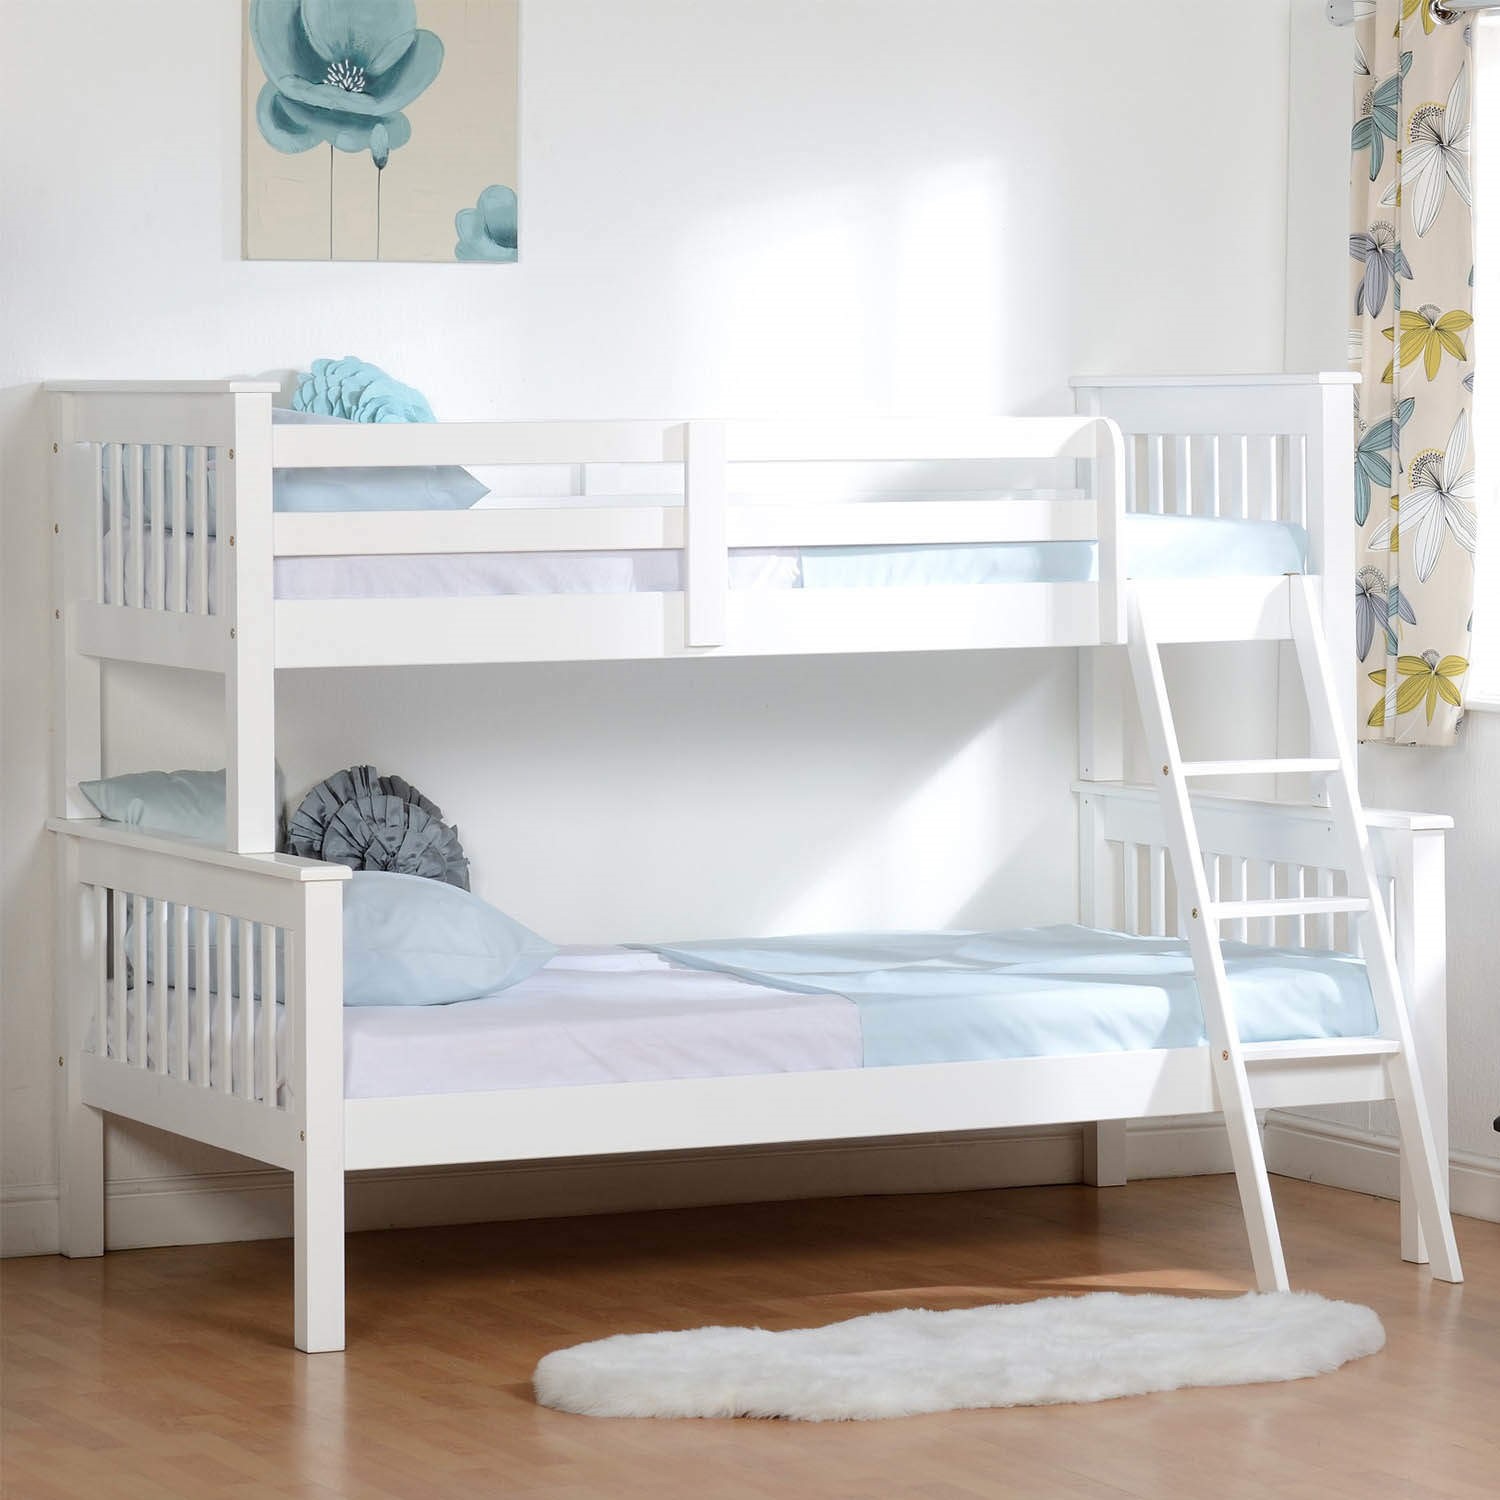 двухъярусная кровать для детей белая деревянная